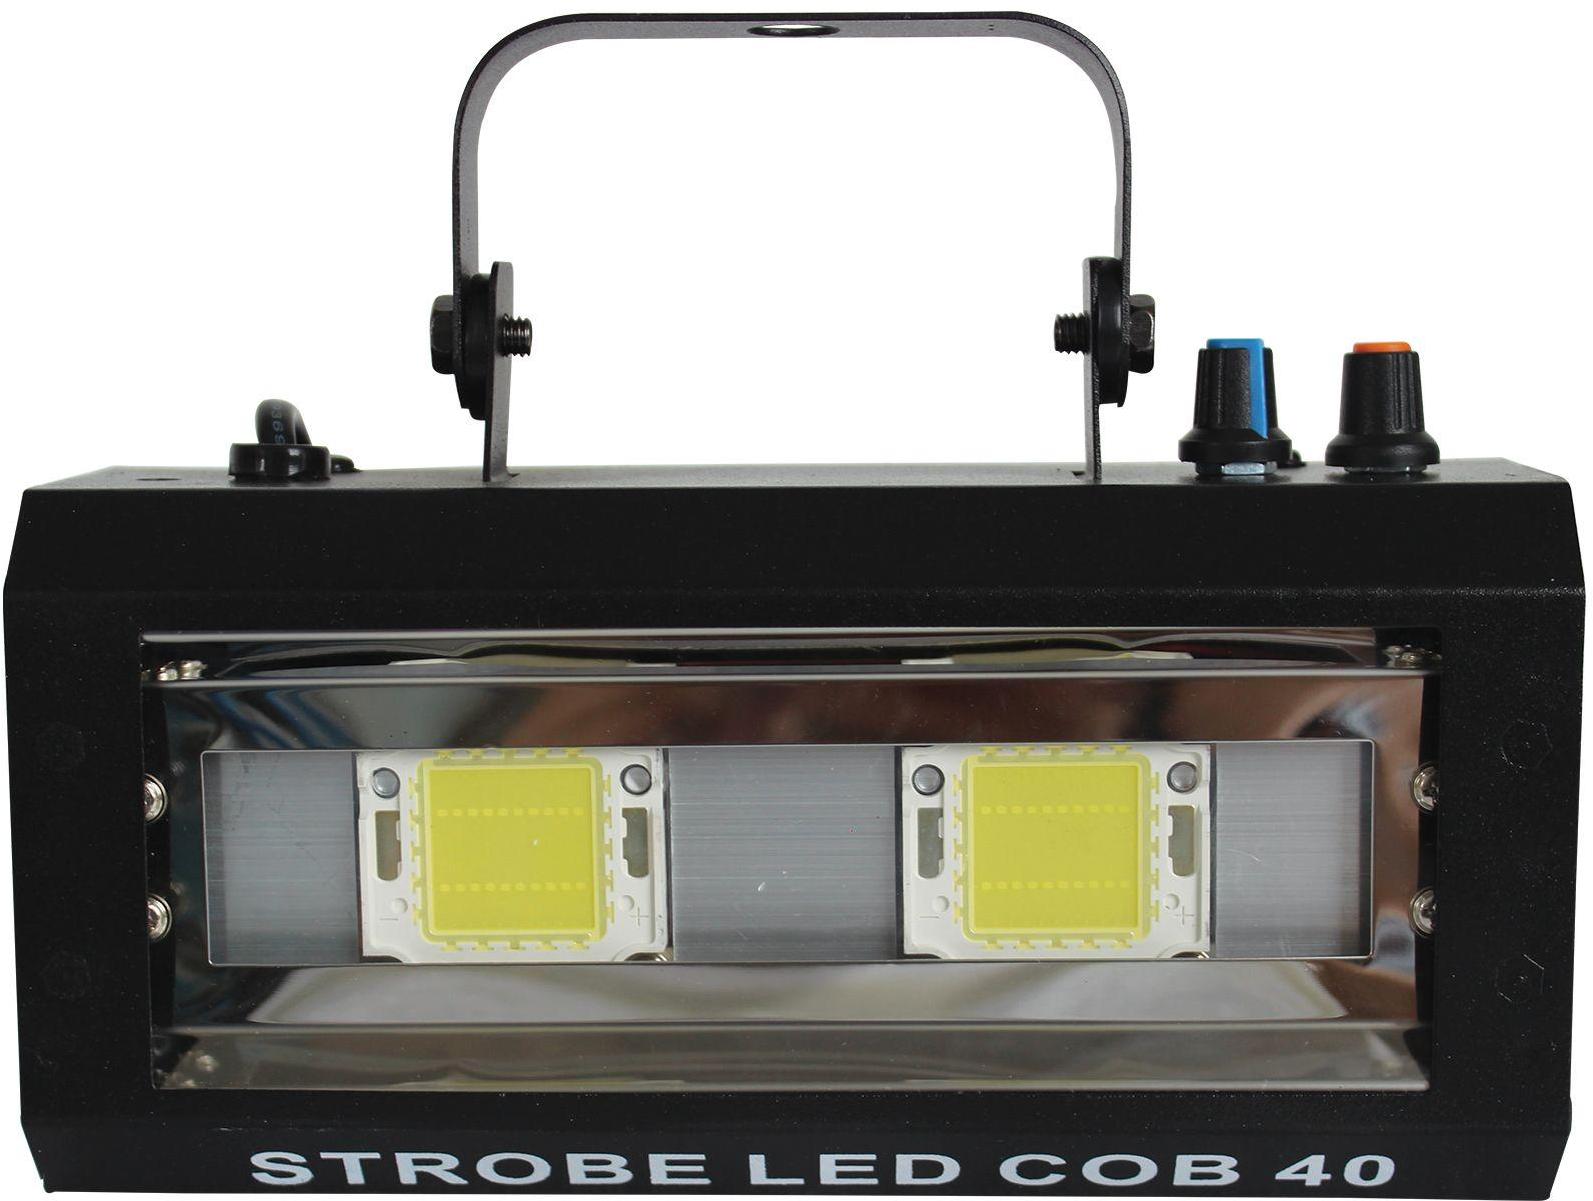 Stroboscope a led Power lighting Strobe Led Cob 40